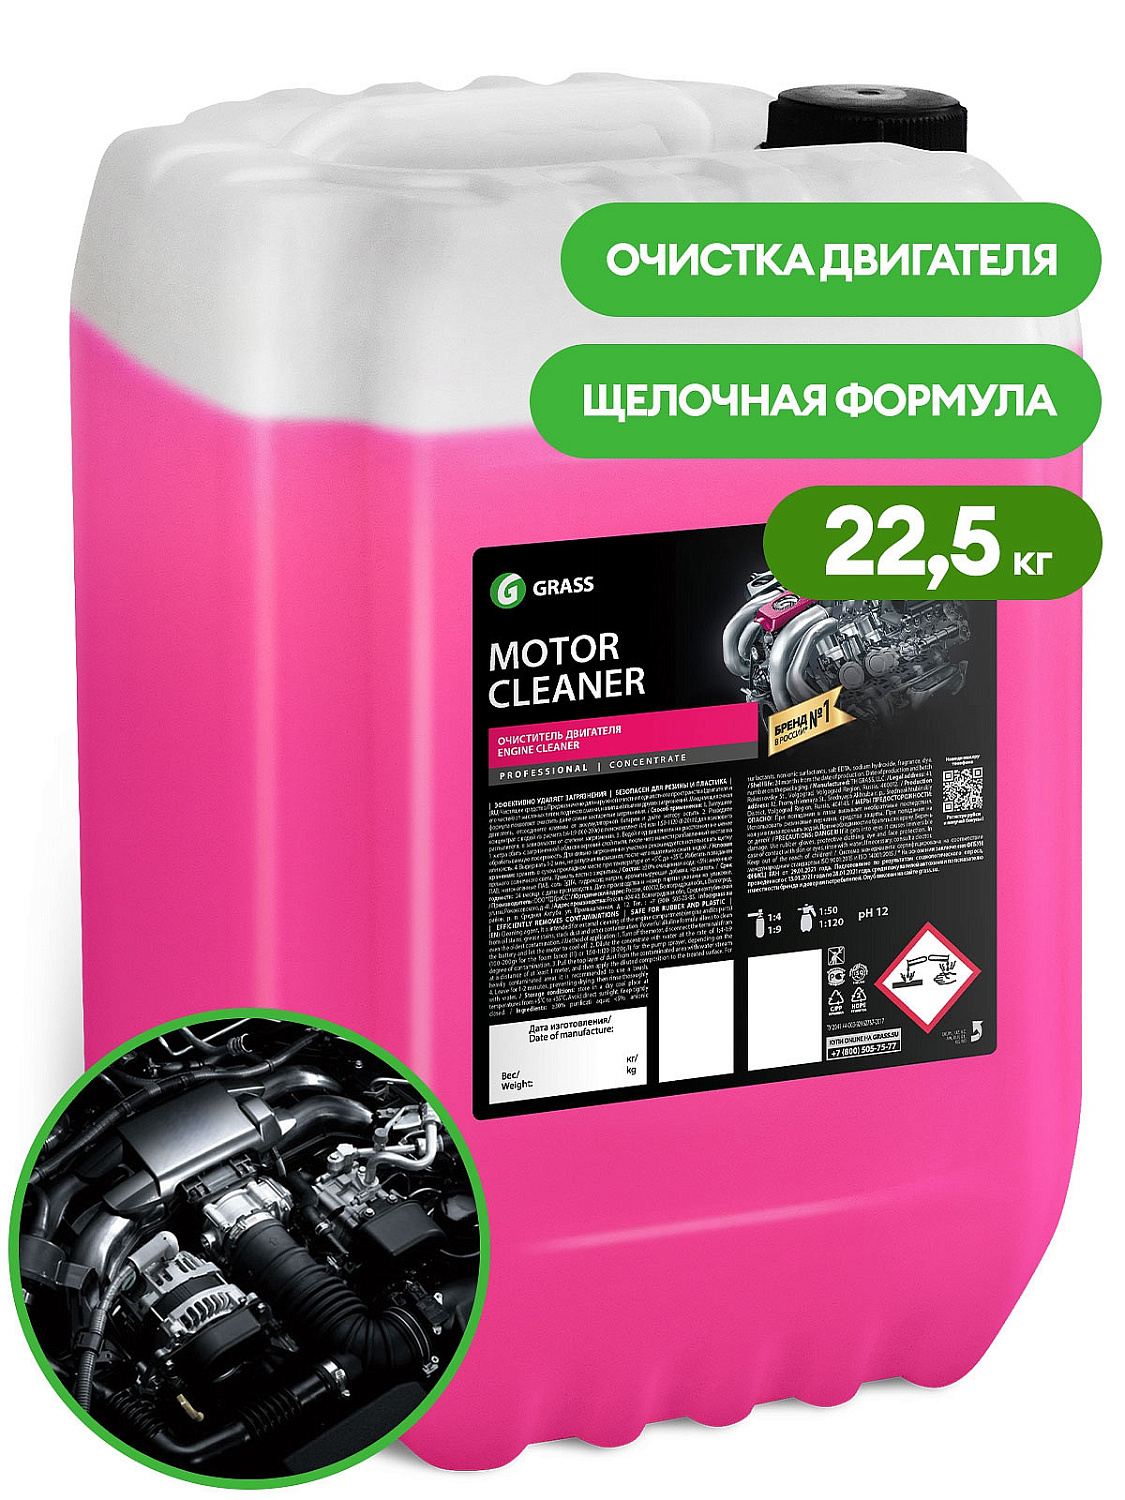 Очиститель двигателя "Motor Cleaner" 22.5кг